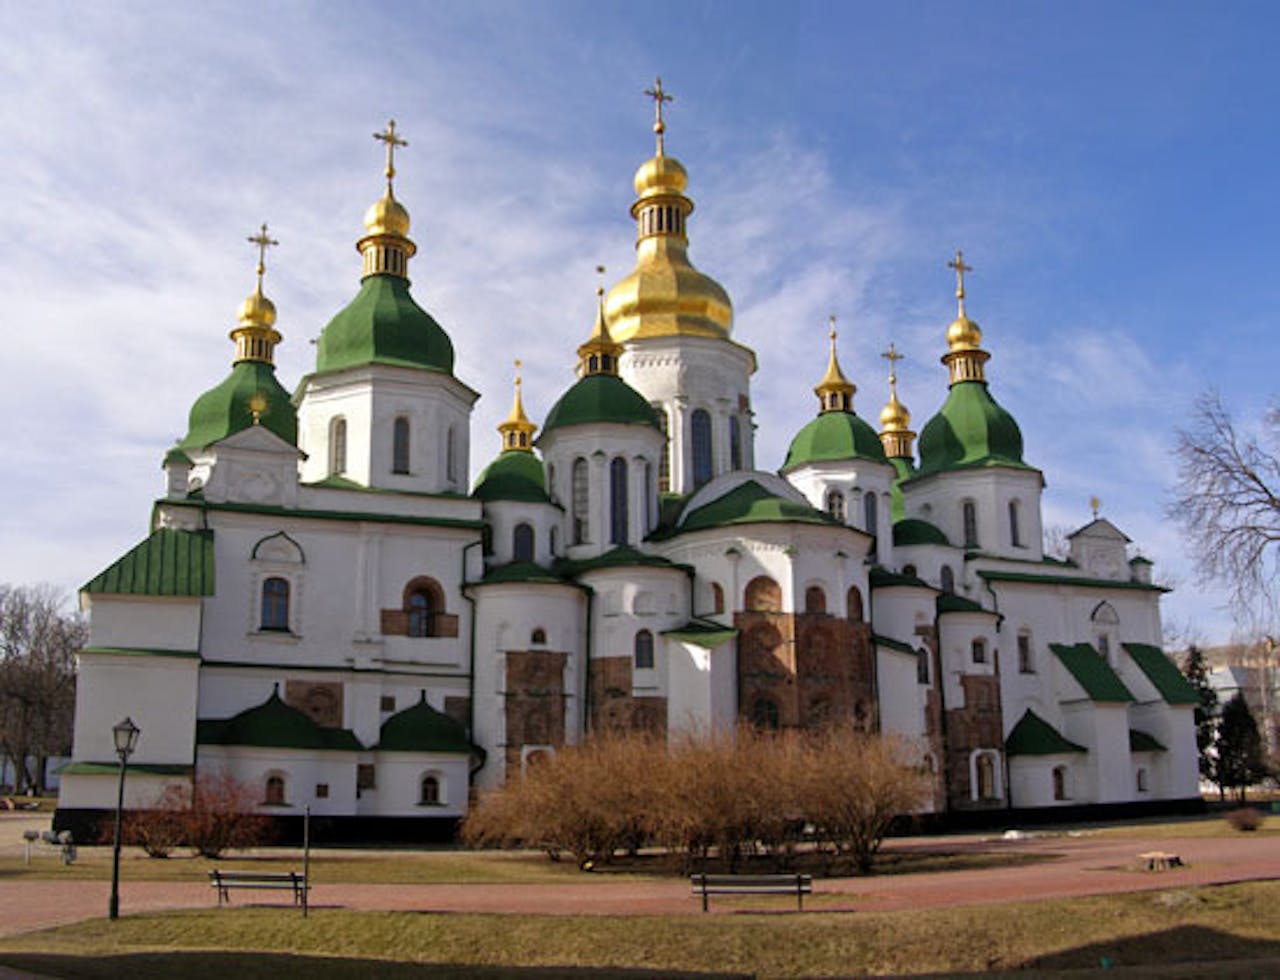 De Sint-Sophiakathedraal in Kiev, Oekraïne.